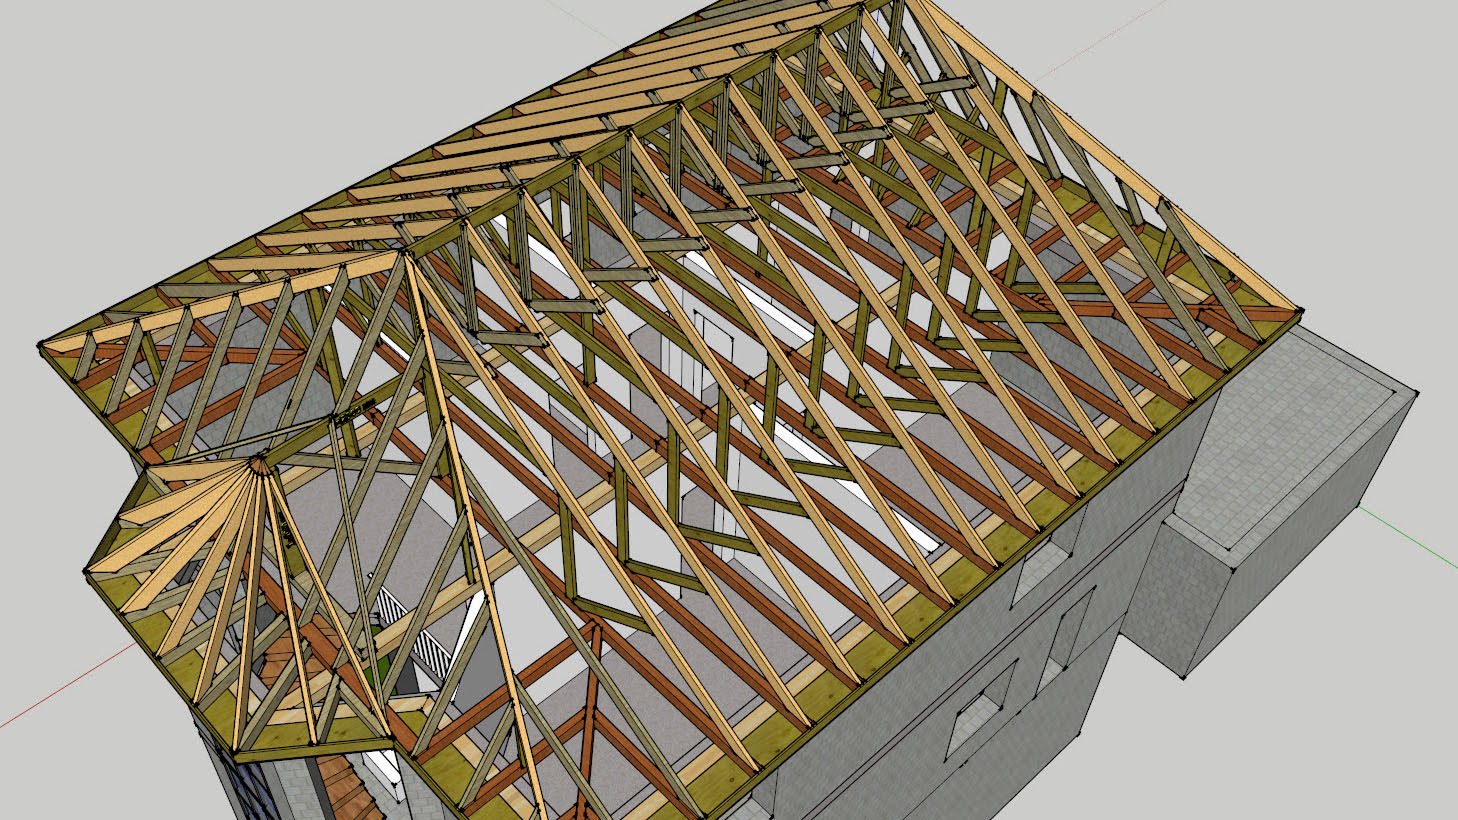 Какие бывают вальмовые крыши, особенности конструкций